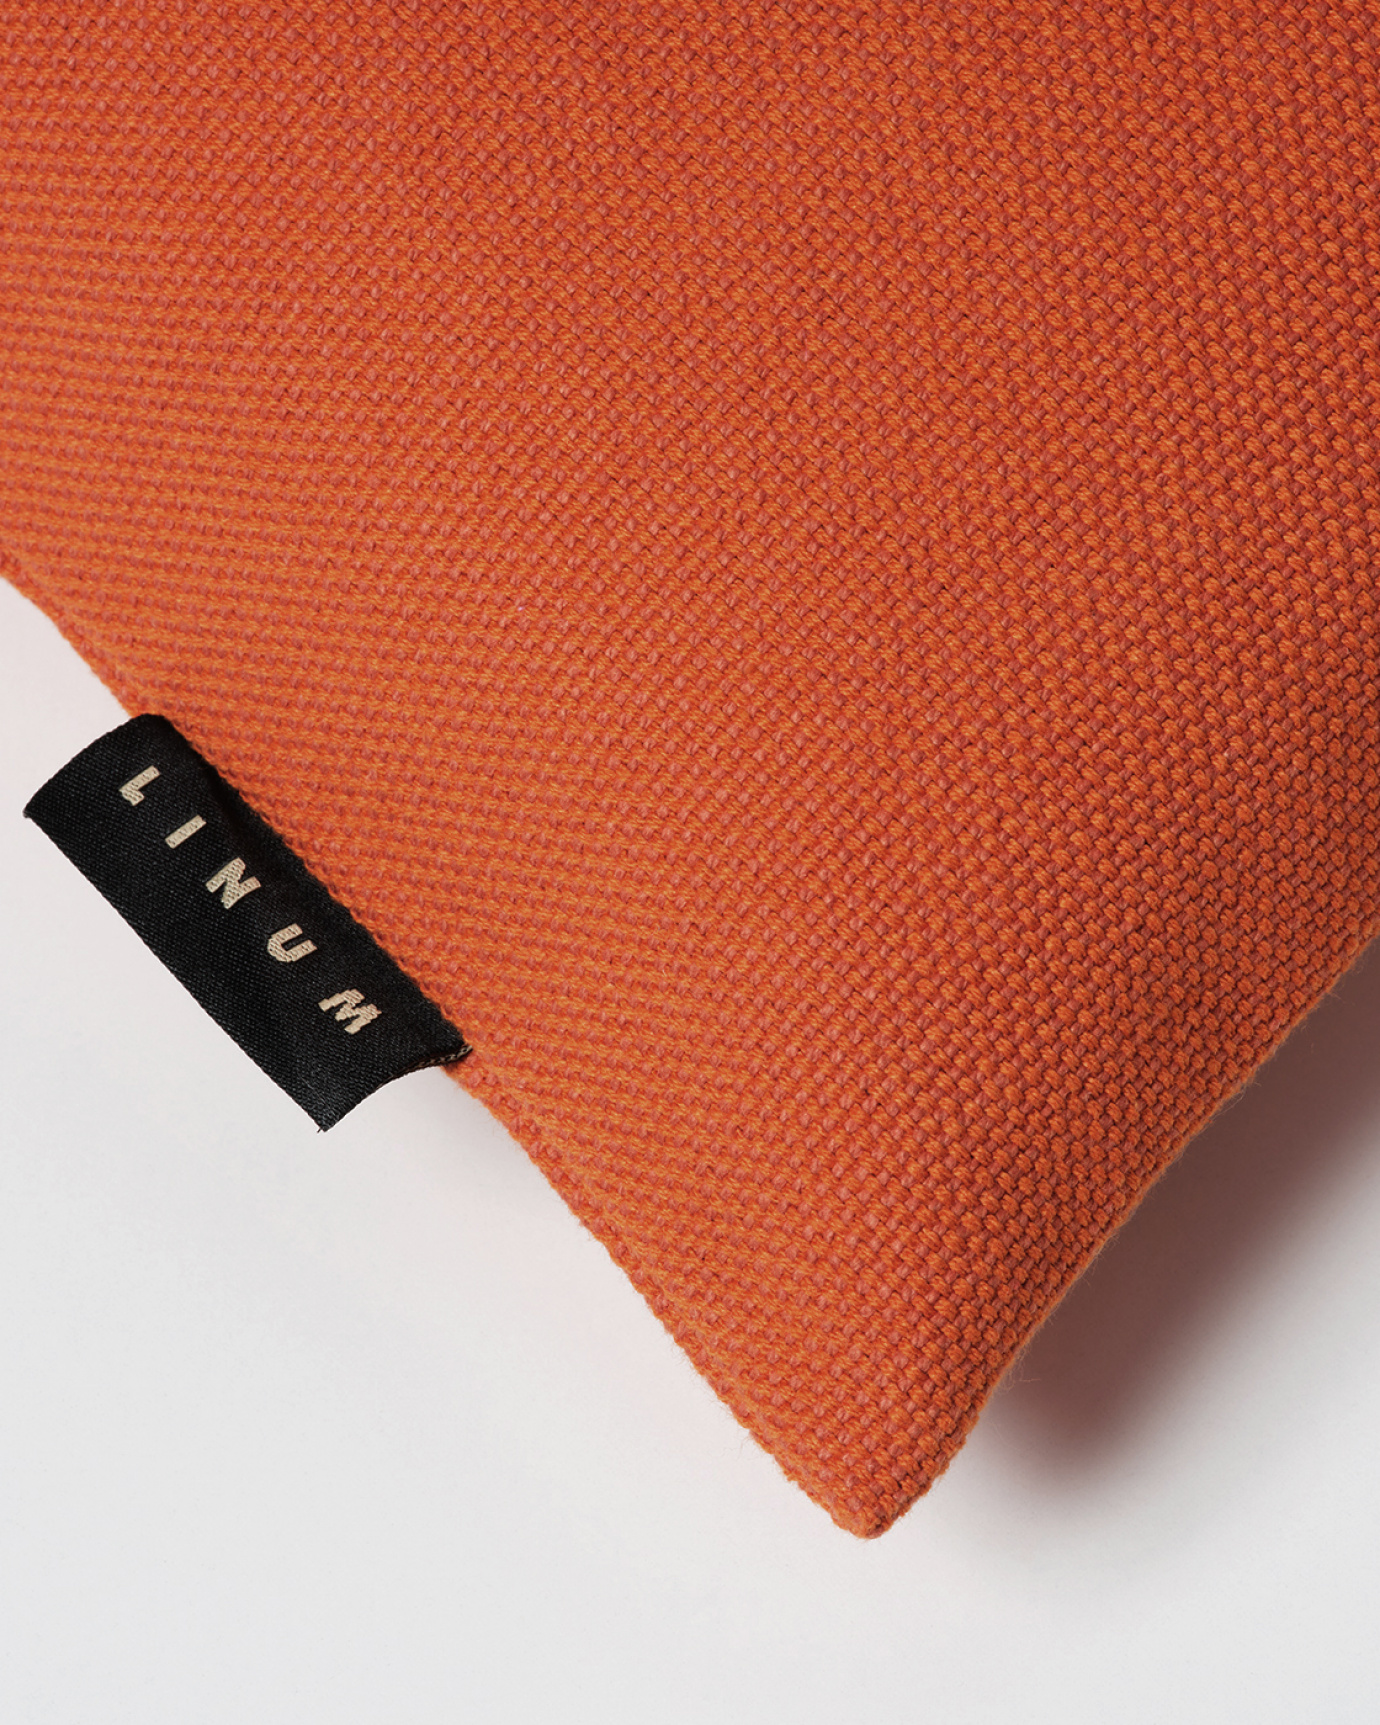 PEPPER Cushion cover 50x50 cm Rusty orange, bild 2 